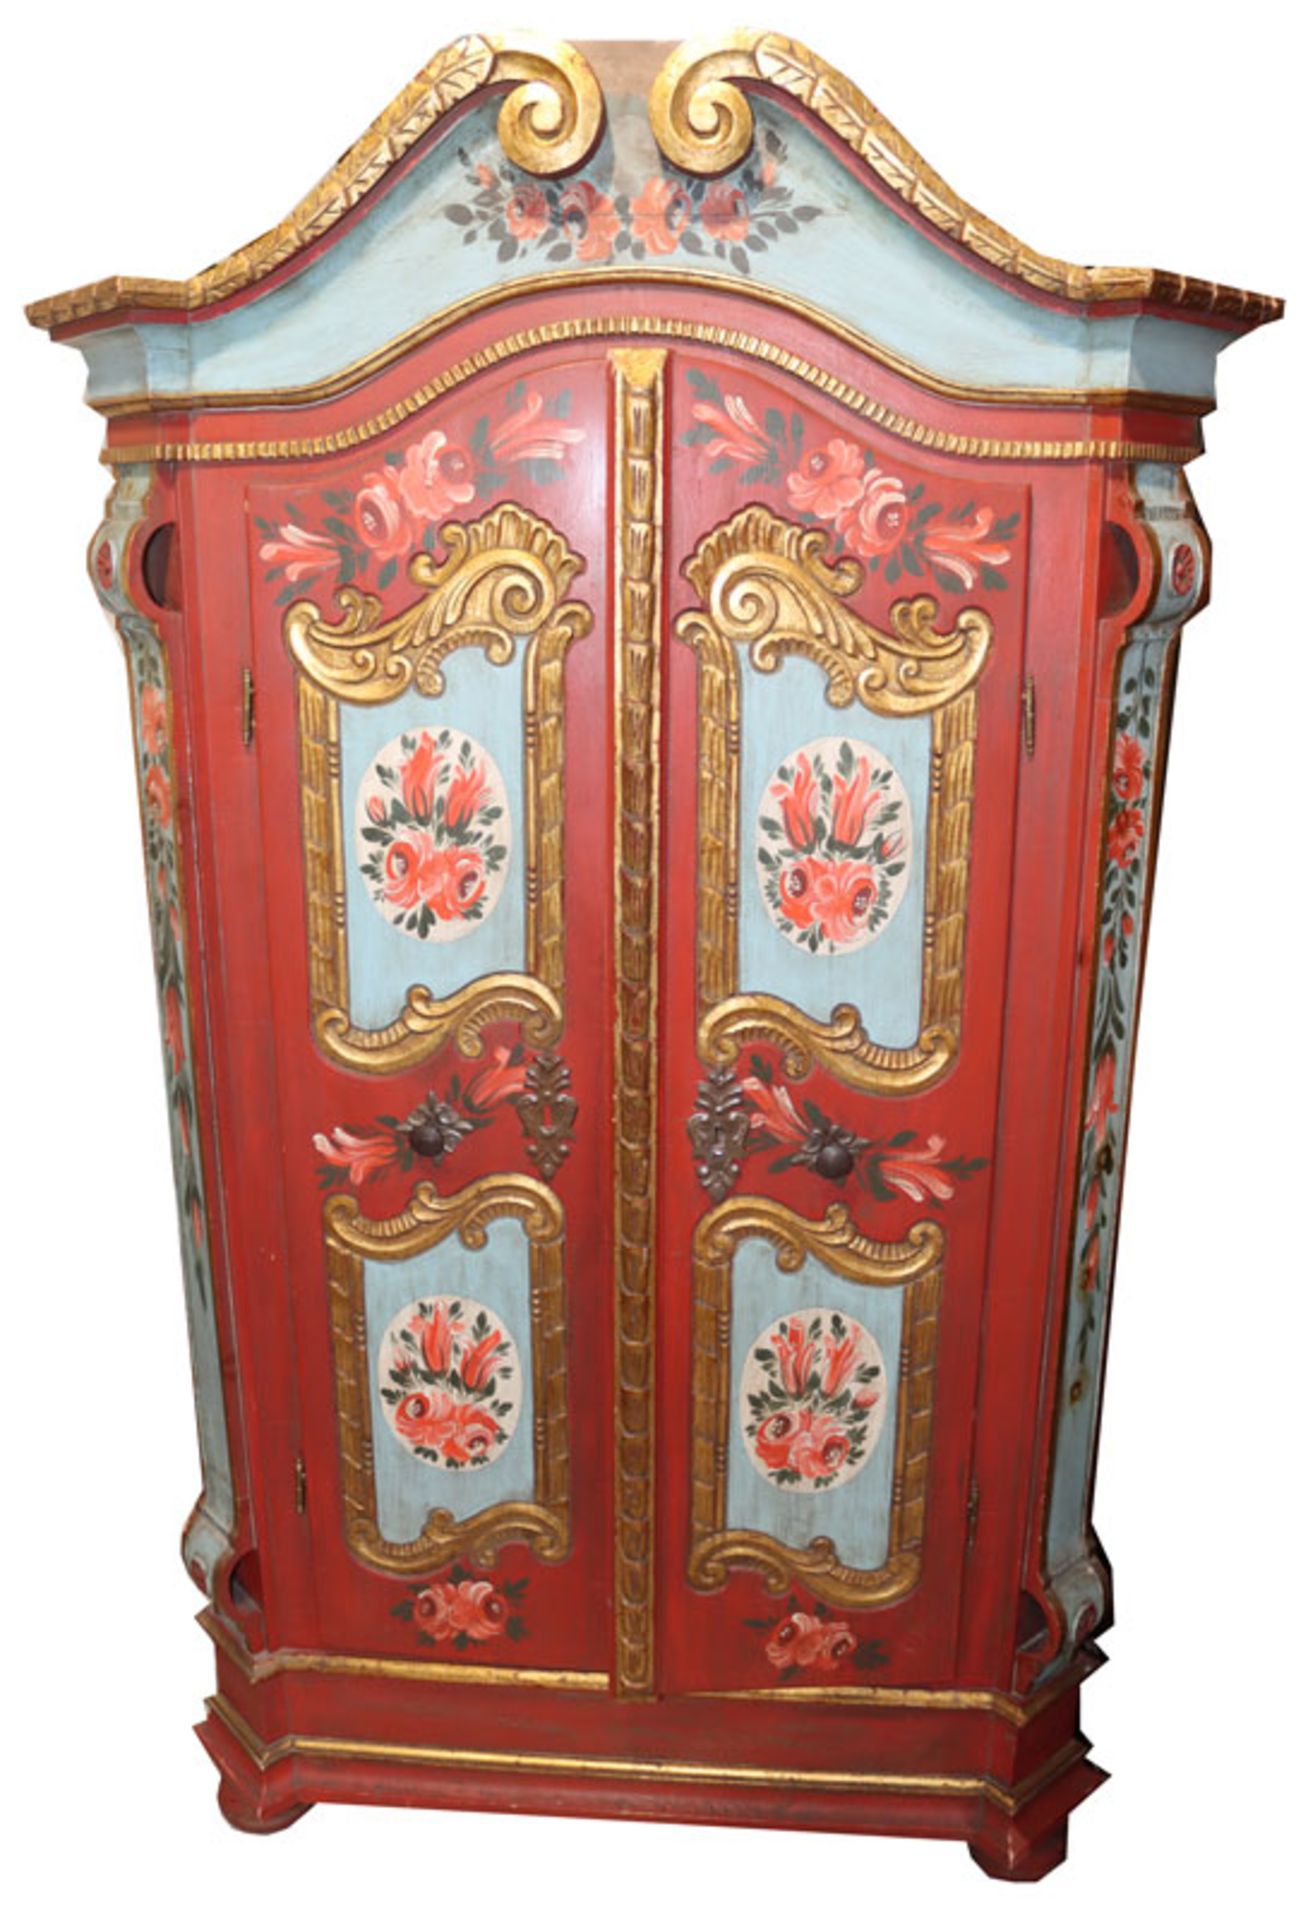 Bauernschrank, Korpus mit 2 Türen, blau/rot/gold bemalt, bäuerliche Blumenmalerei, H 186 cm, B 112